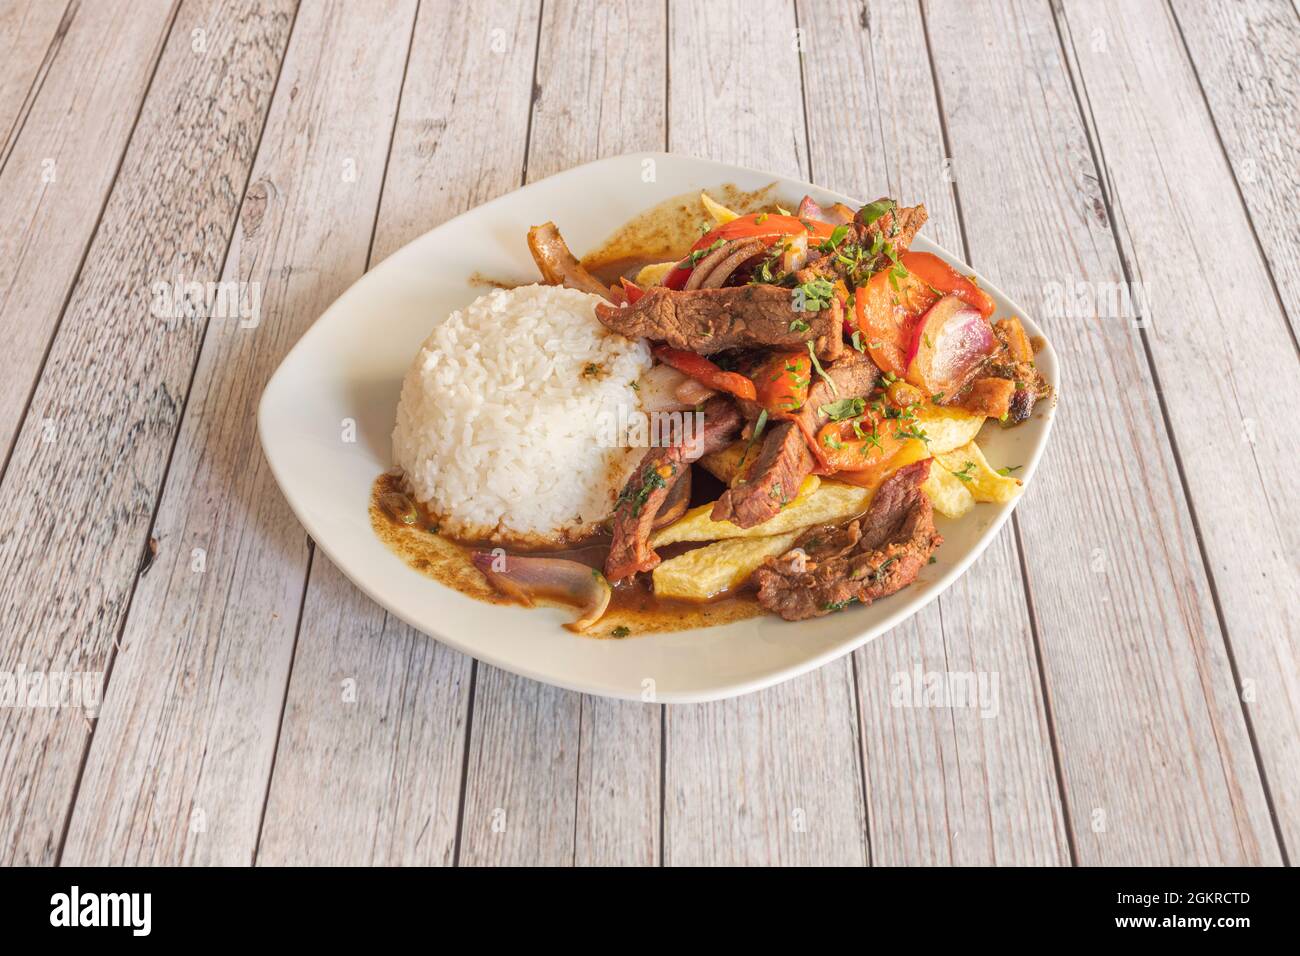 Teller mit gebratenen Filet mit weißem Reis und Sojasauce, Tomaten, roten Zwiebeln, garniert mit hausgemachten Chips Stockfoto